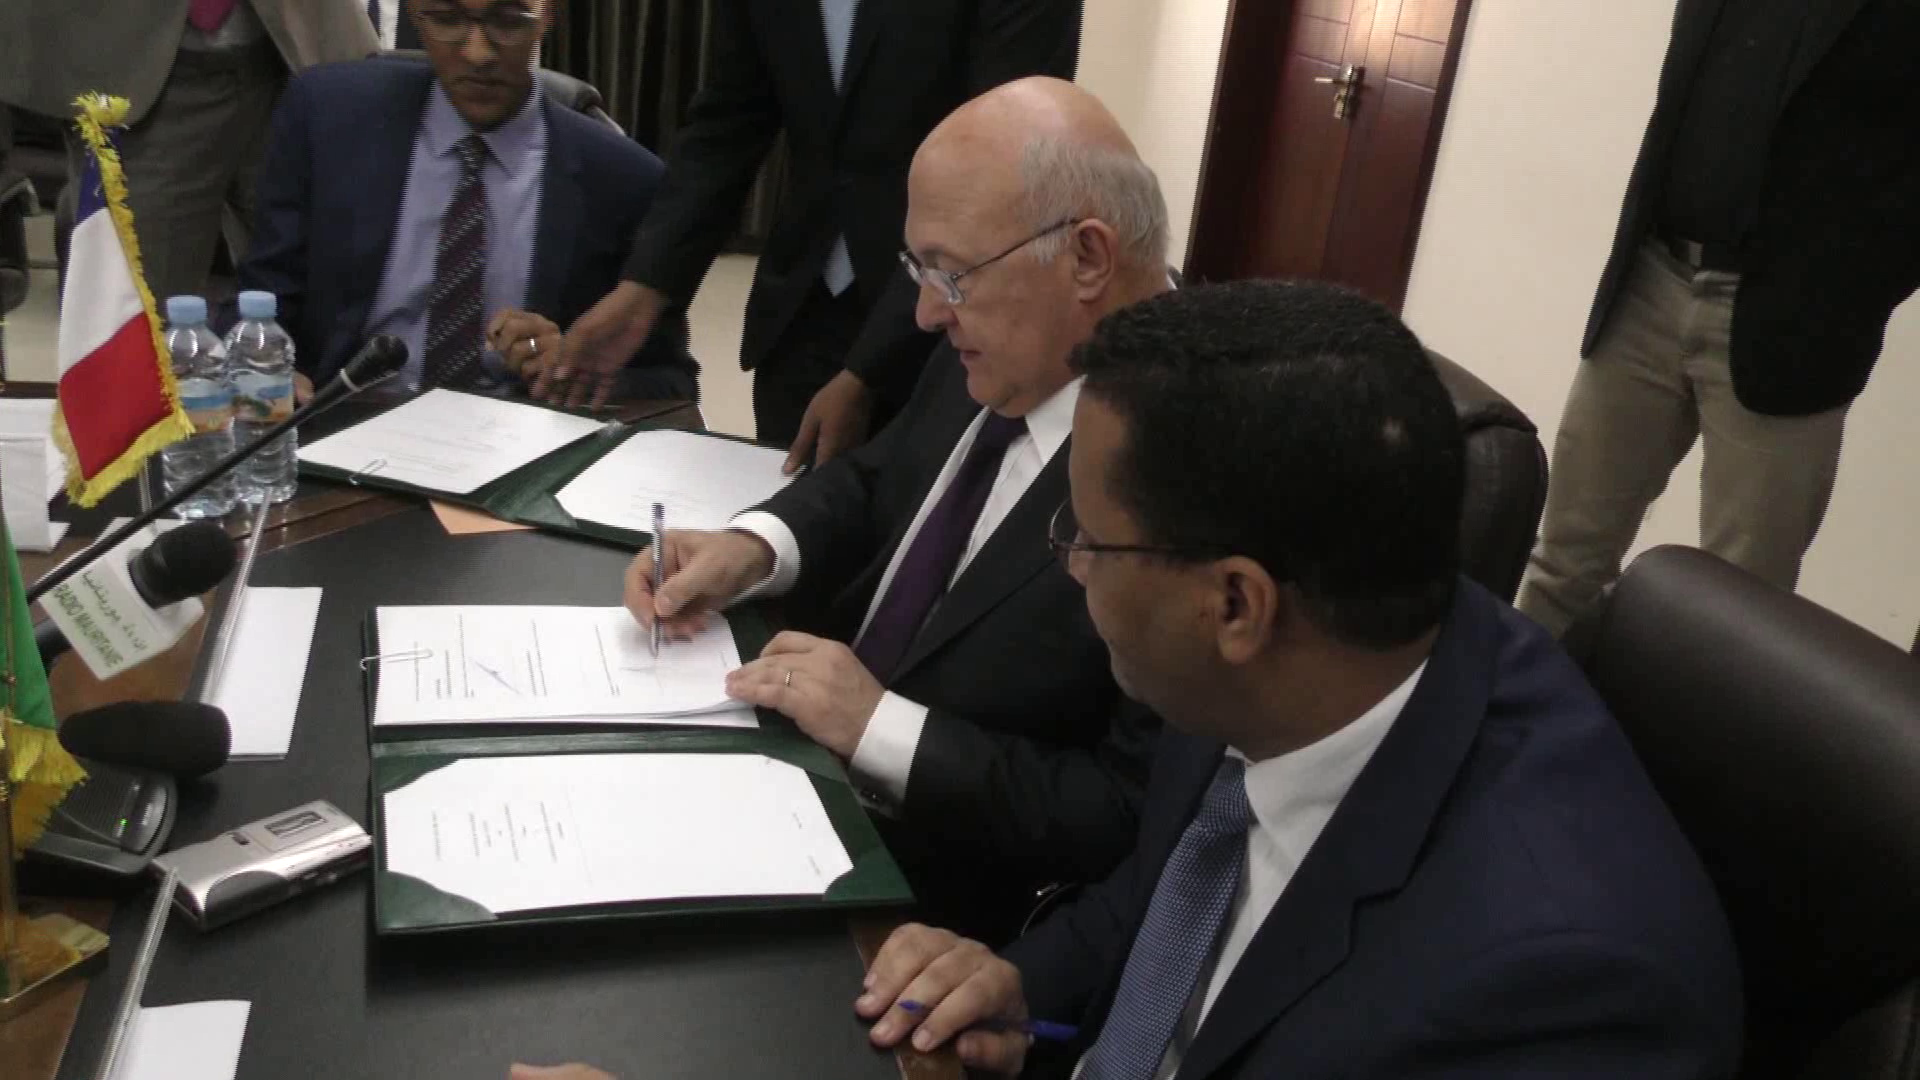 وزير الاقتصاد والمالية الفرنسي ميشيل سابين ونظيره الموريتاني المختار ولد اجاي خلال توقيع اتفاقية تمويل بنواكشوط.